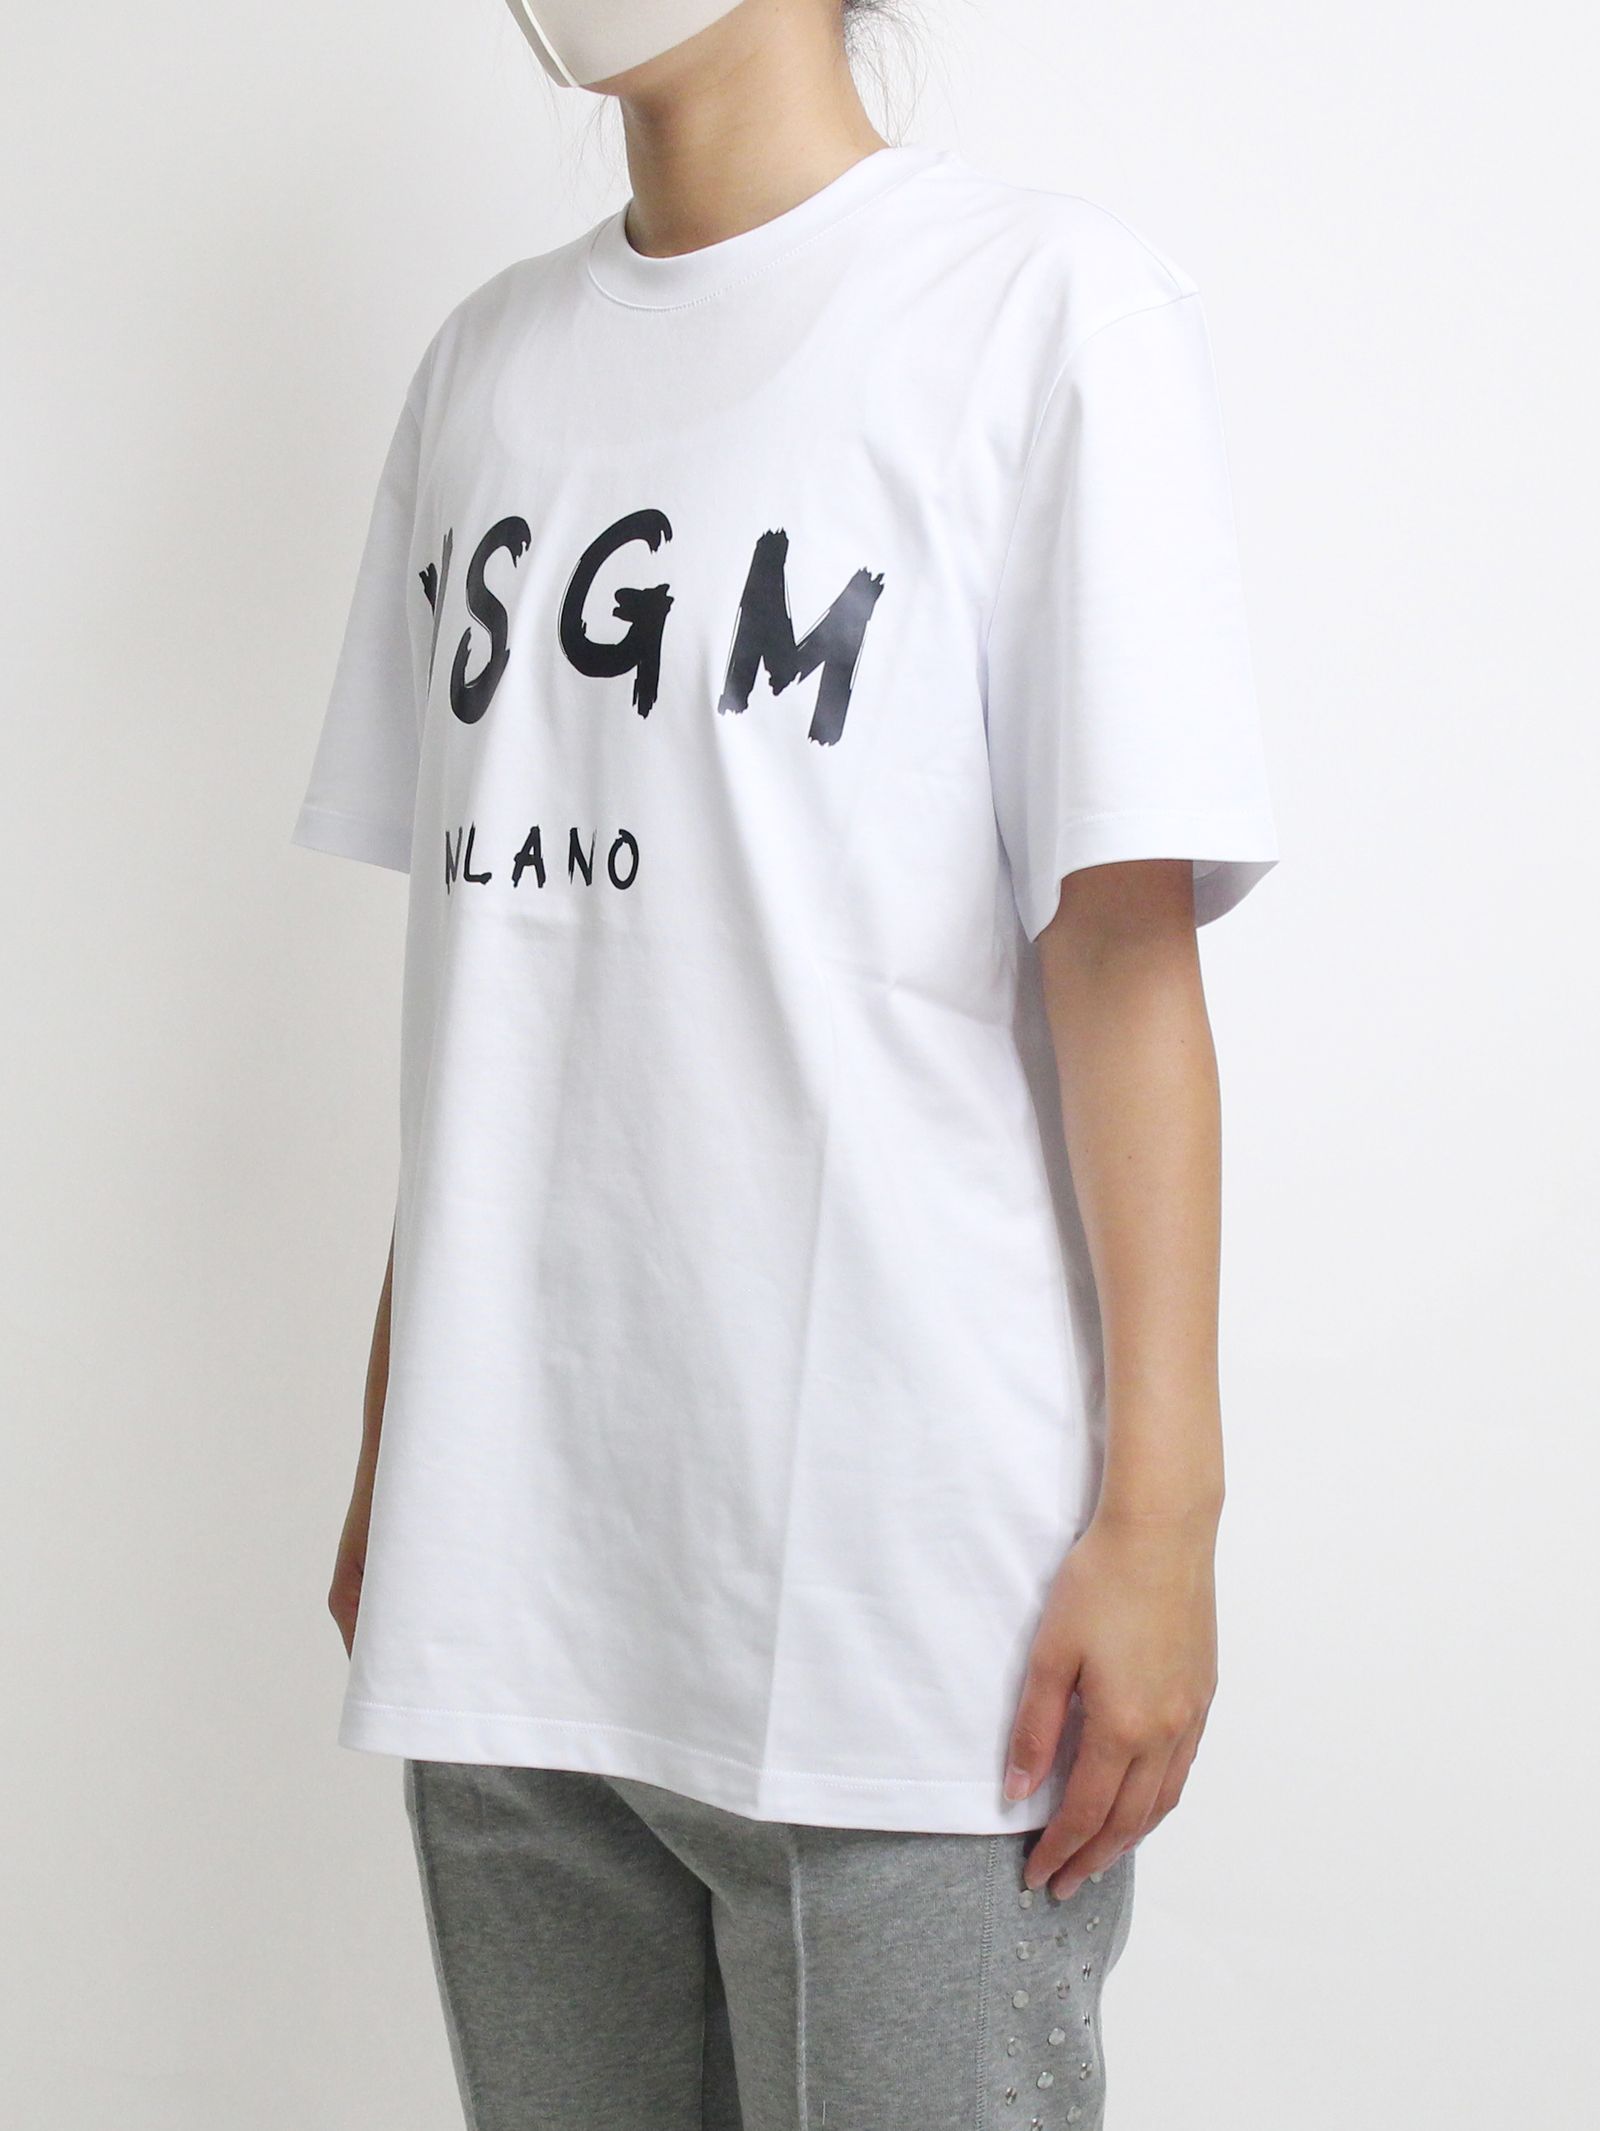 ロゴプリントTシャツ - PAINT BRUSHED LOGO T-SHIRTS - WHITE - White - XS